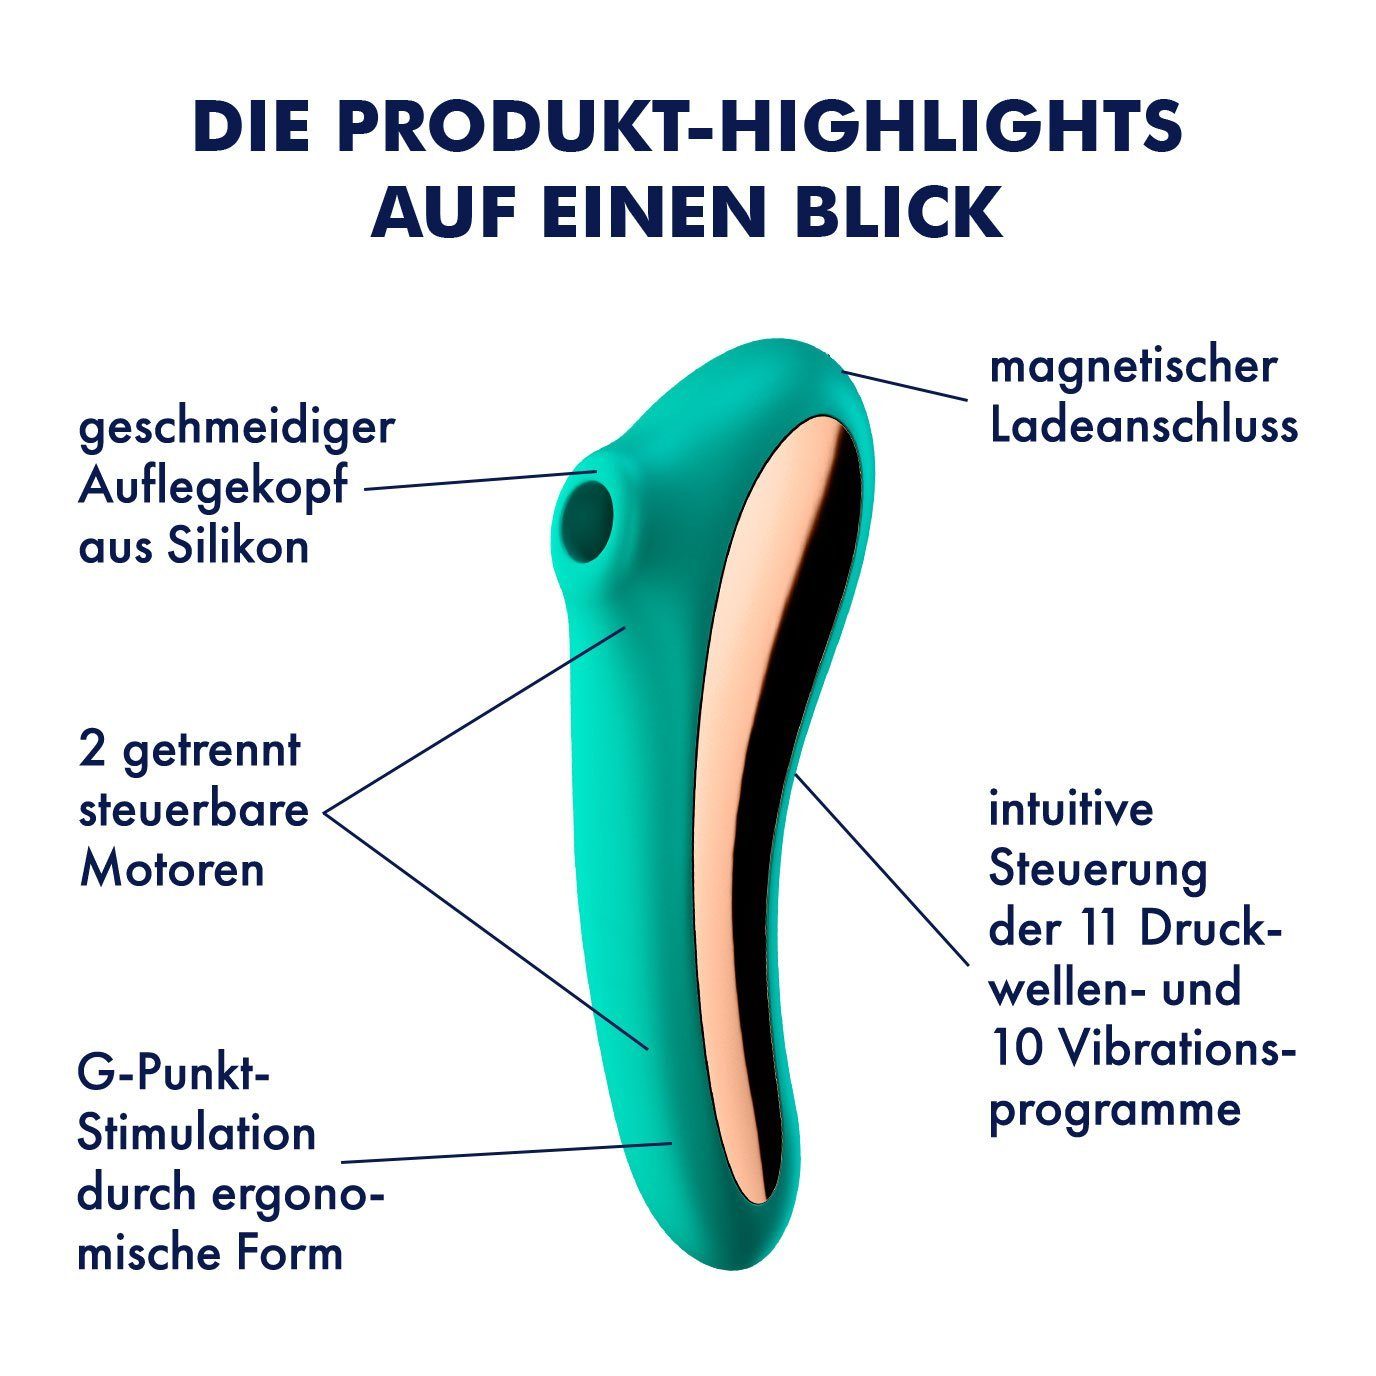 wasserdicht + grün Druckwellentoy, Klitoris-Stimulator 'Dual Kiss', 2:1 Vibrator Satisfyer Satisfyer